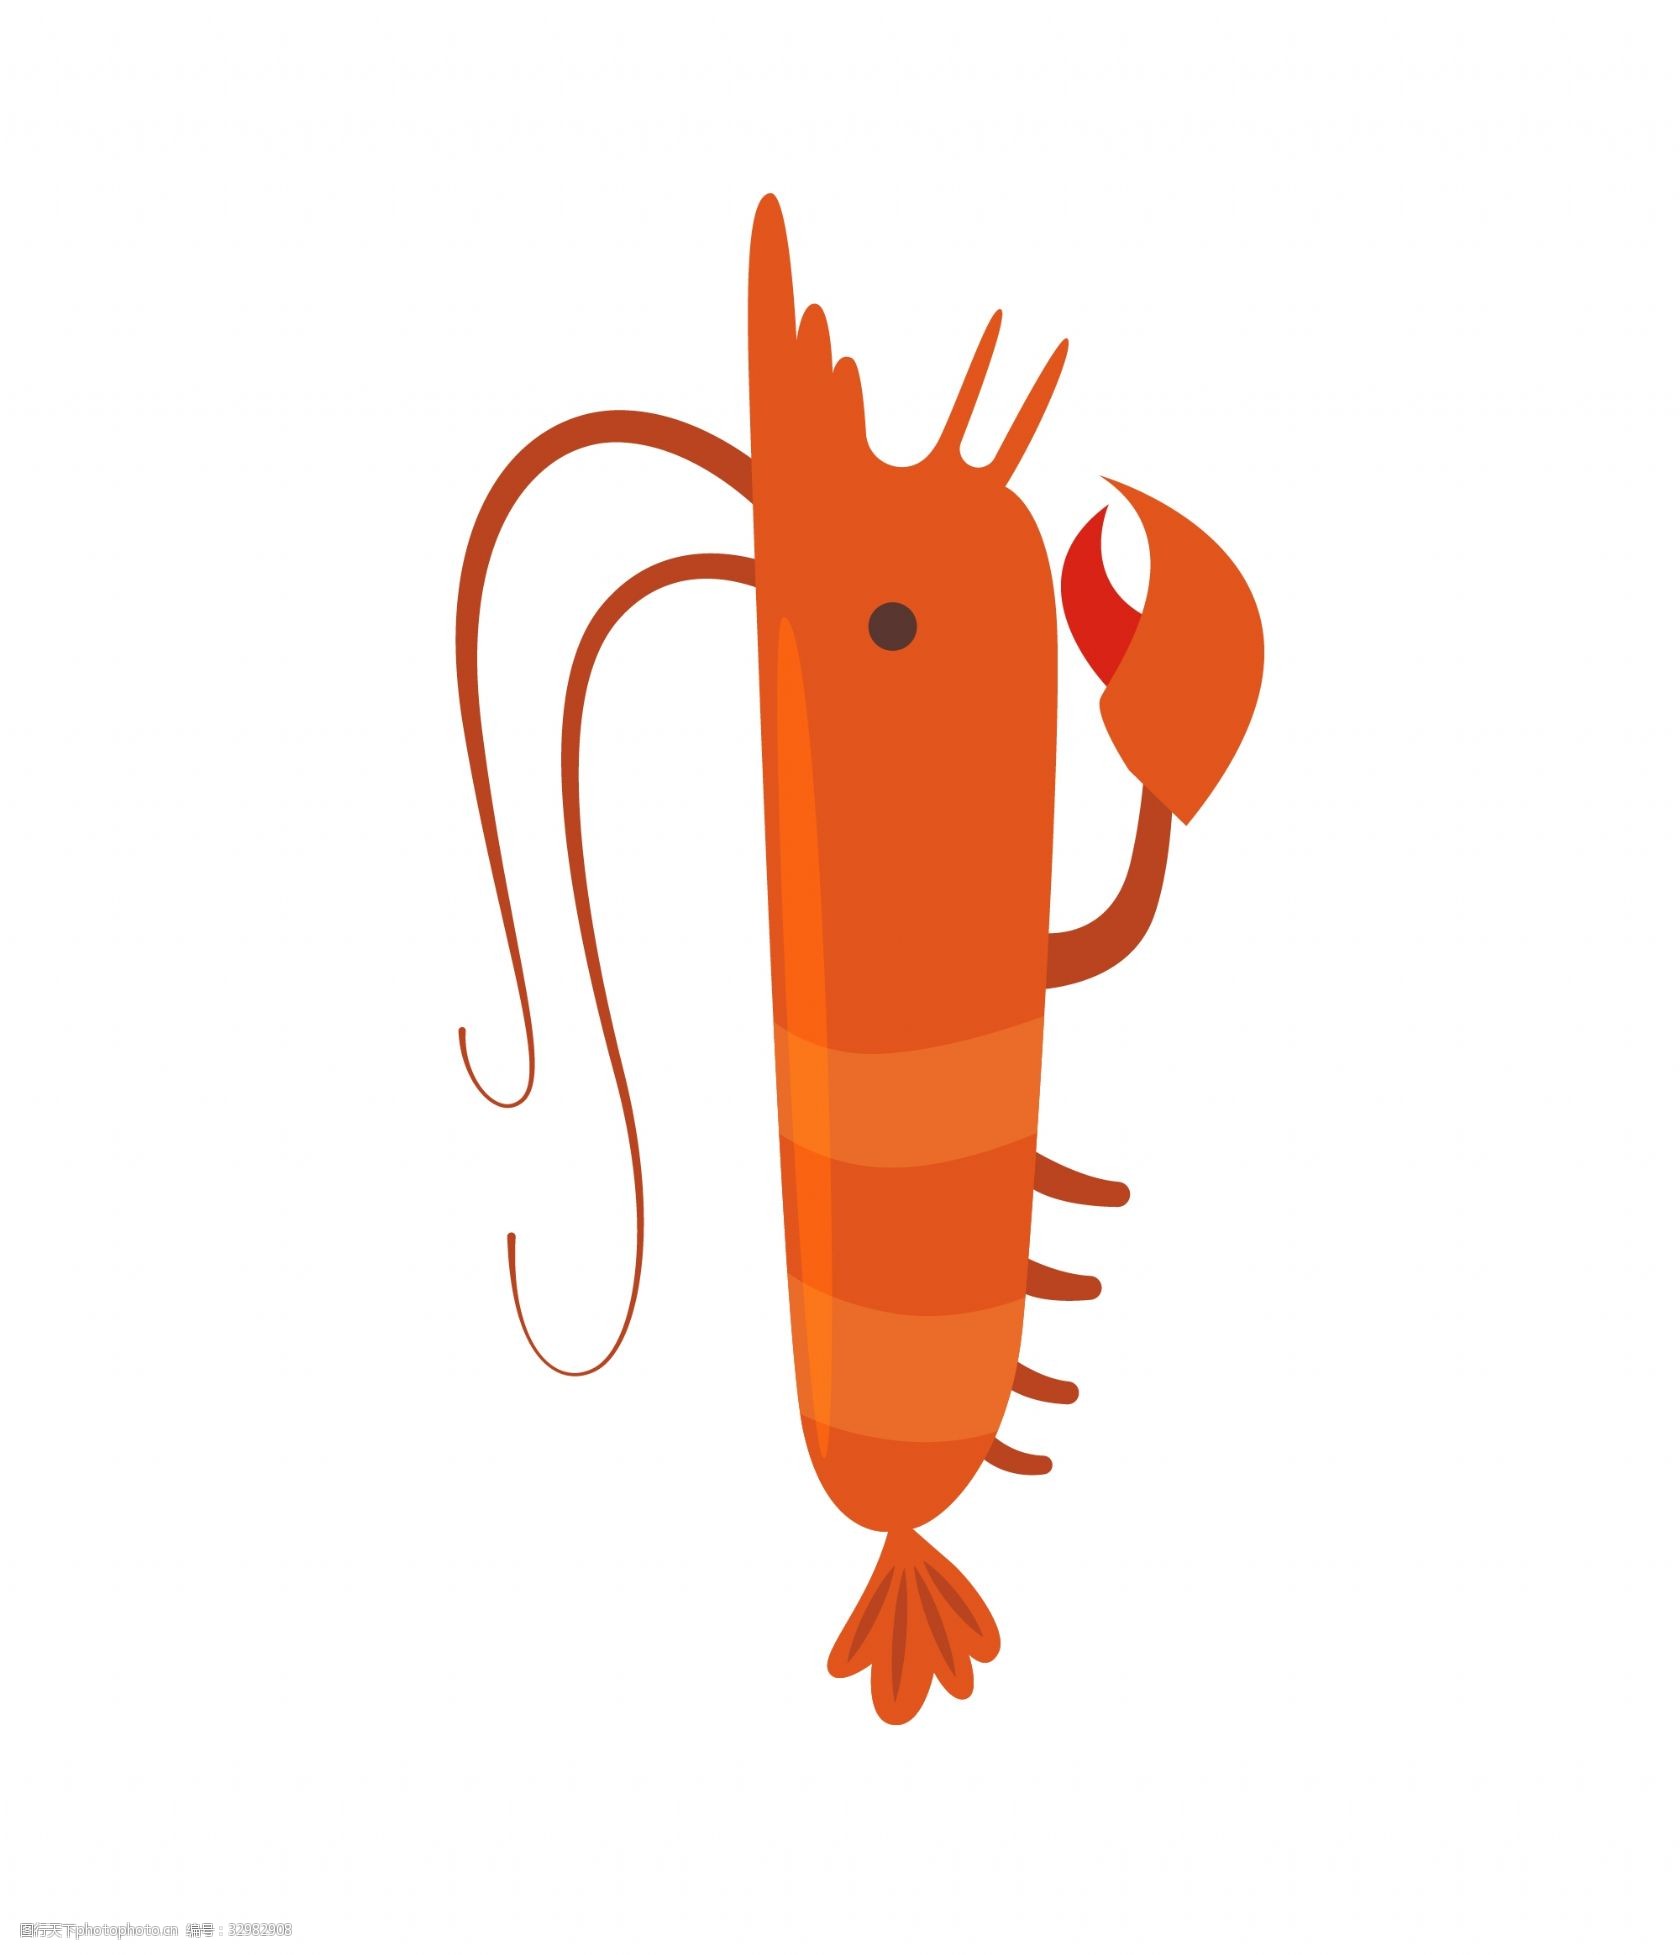 关键词:细长的小龙虾插画 细长的龙虾 卡通插画 龙虾插画 动物插画